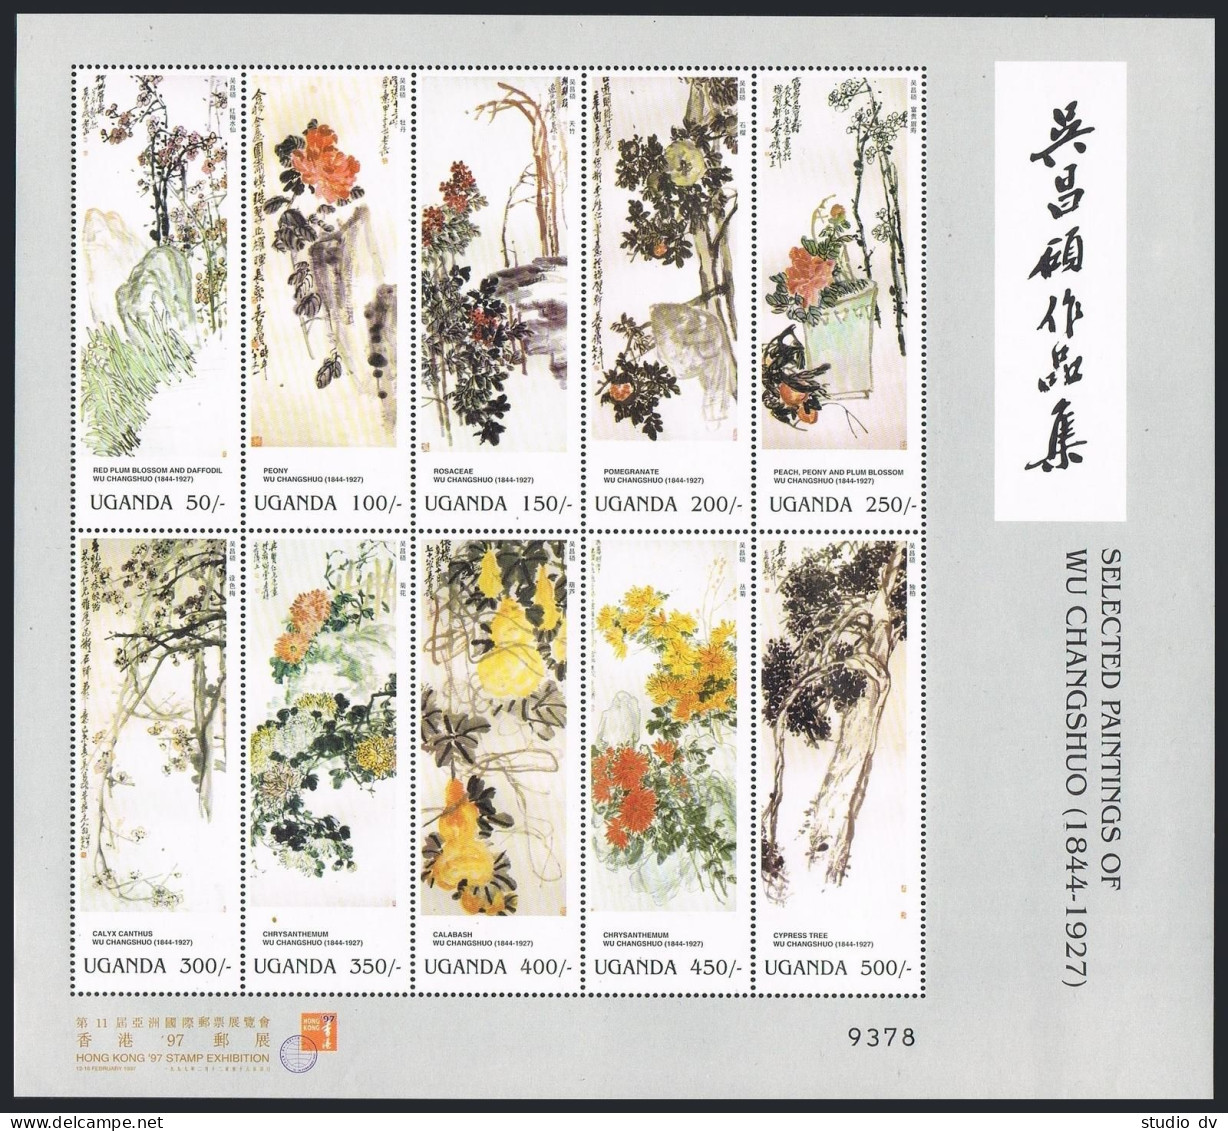 Uganda 1475 Aj Sheet, MNH. Paintings By Wu Changshuo, 1997. Flowers. - Uganda (1962-...)